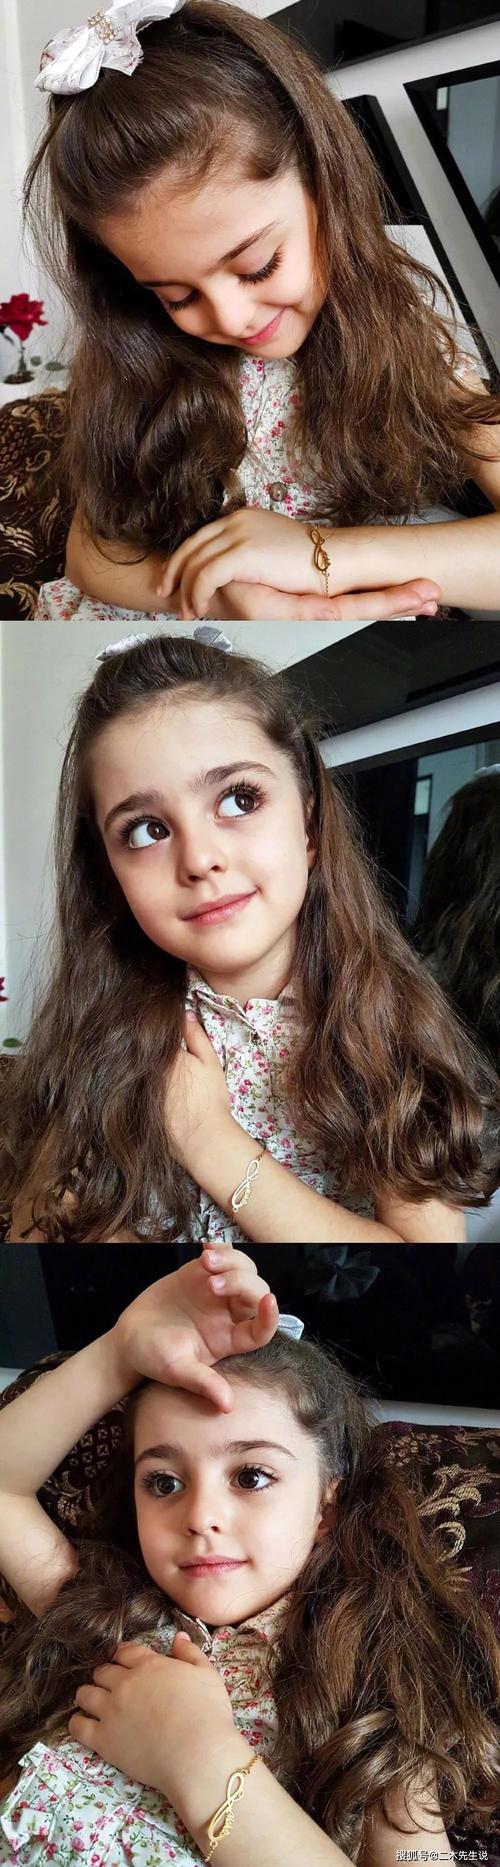 伊朗8岁小女孩被称为"全球最美"!因太美,父亲辞职做贴身保镖